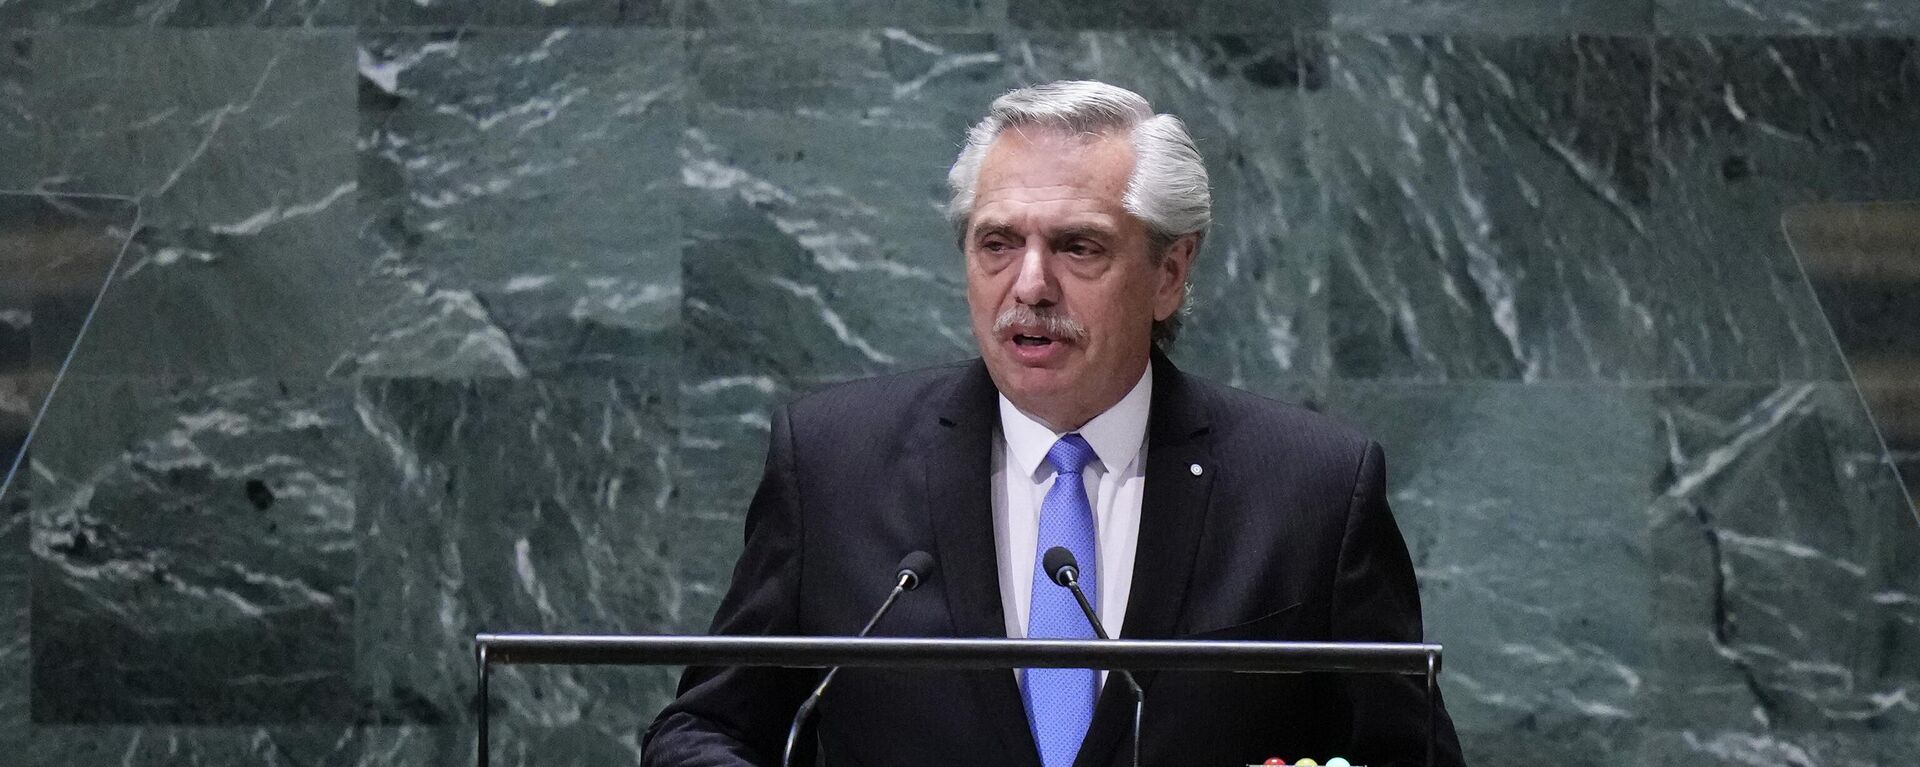 Alberto Fernández discursa na 78ª sessão da Assembleia Geral das Nações Unidas. Nova York, EUA, 19 de setembro de 2023 - Sputnik Brasil, 1920, 19.09.2023